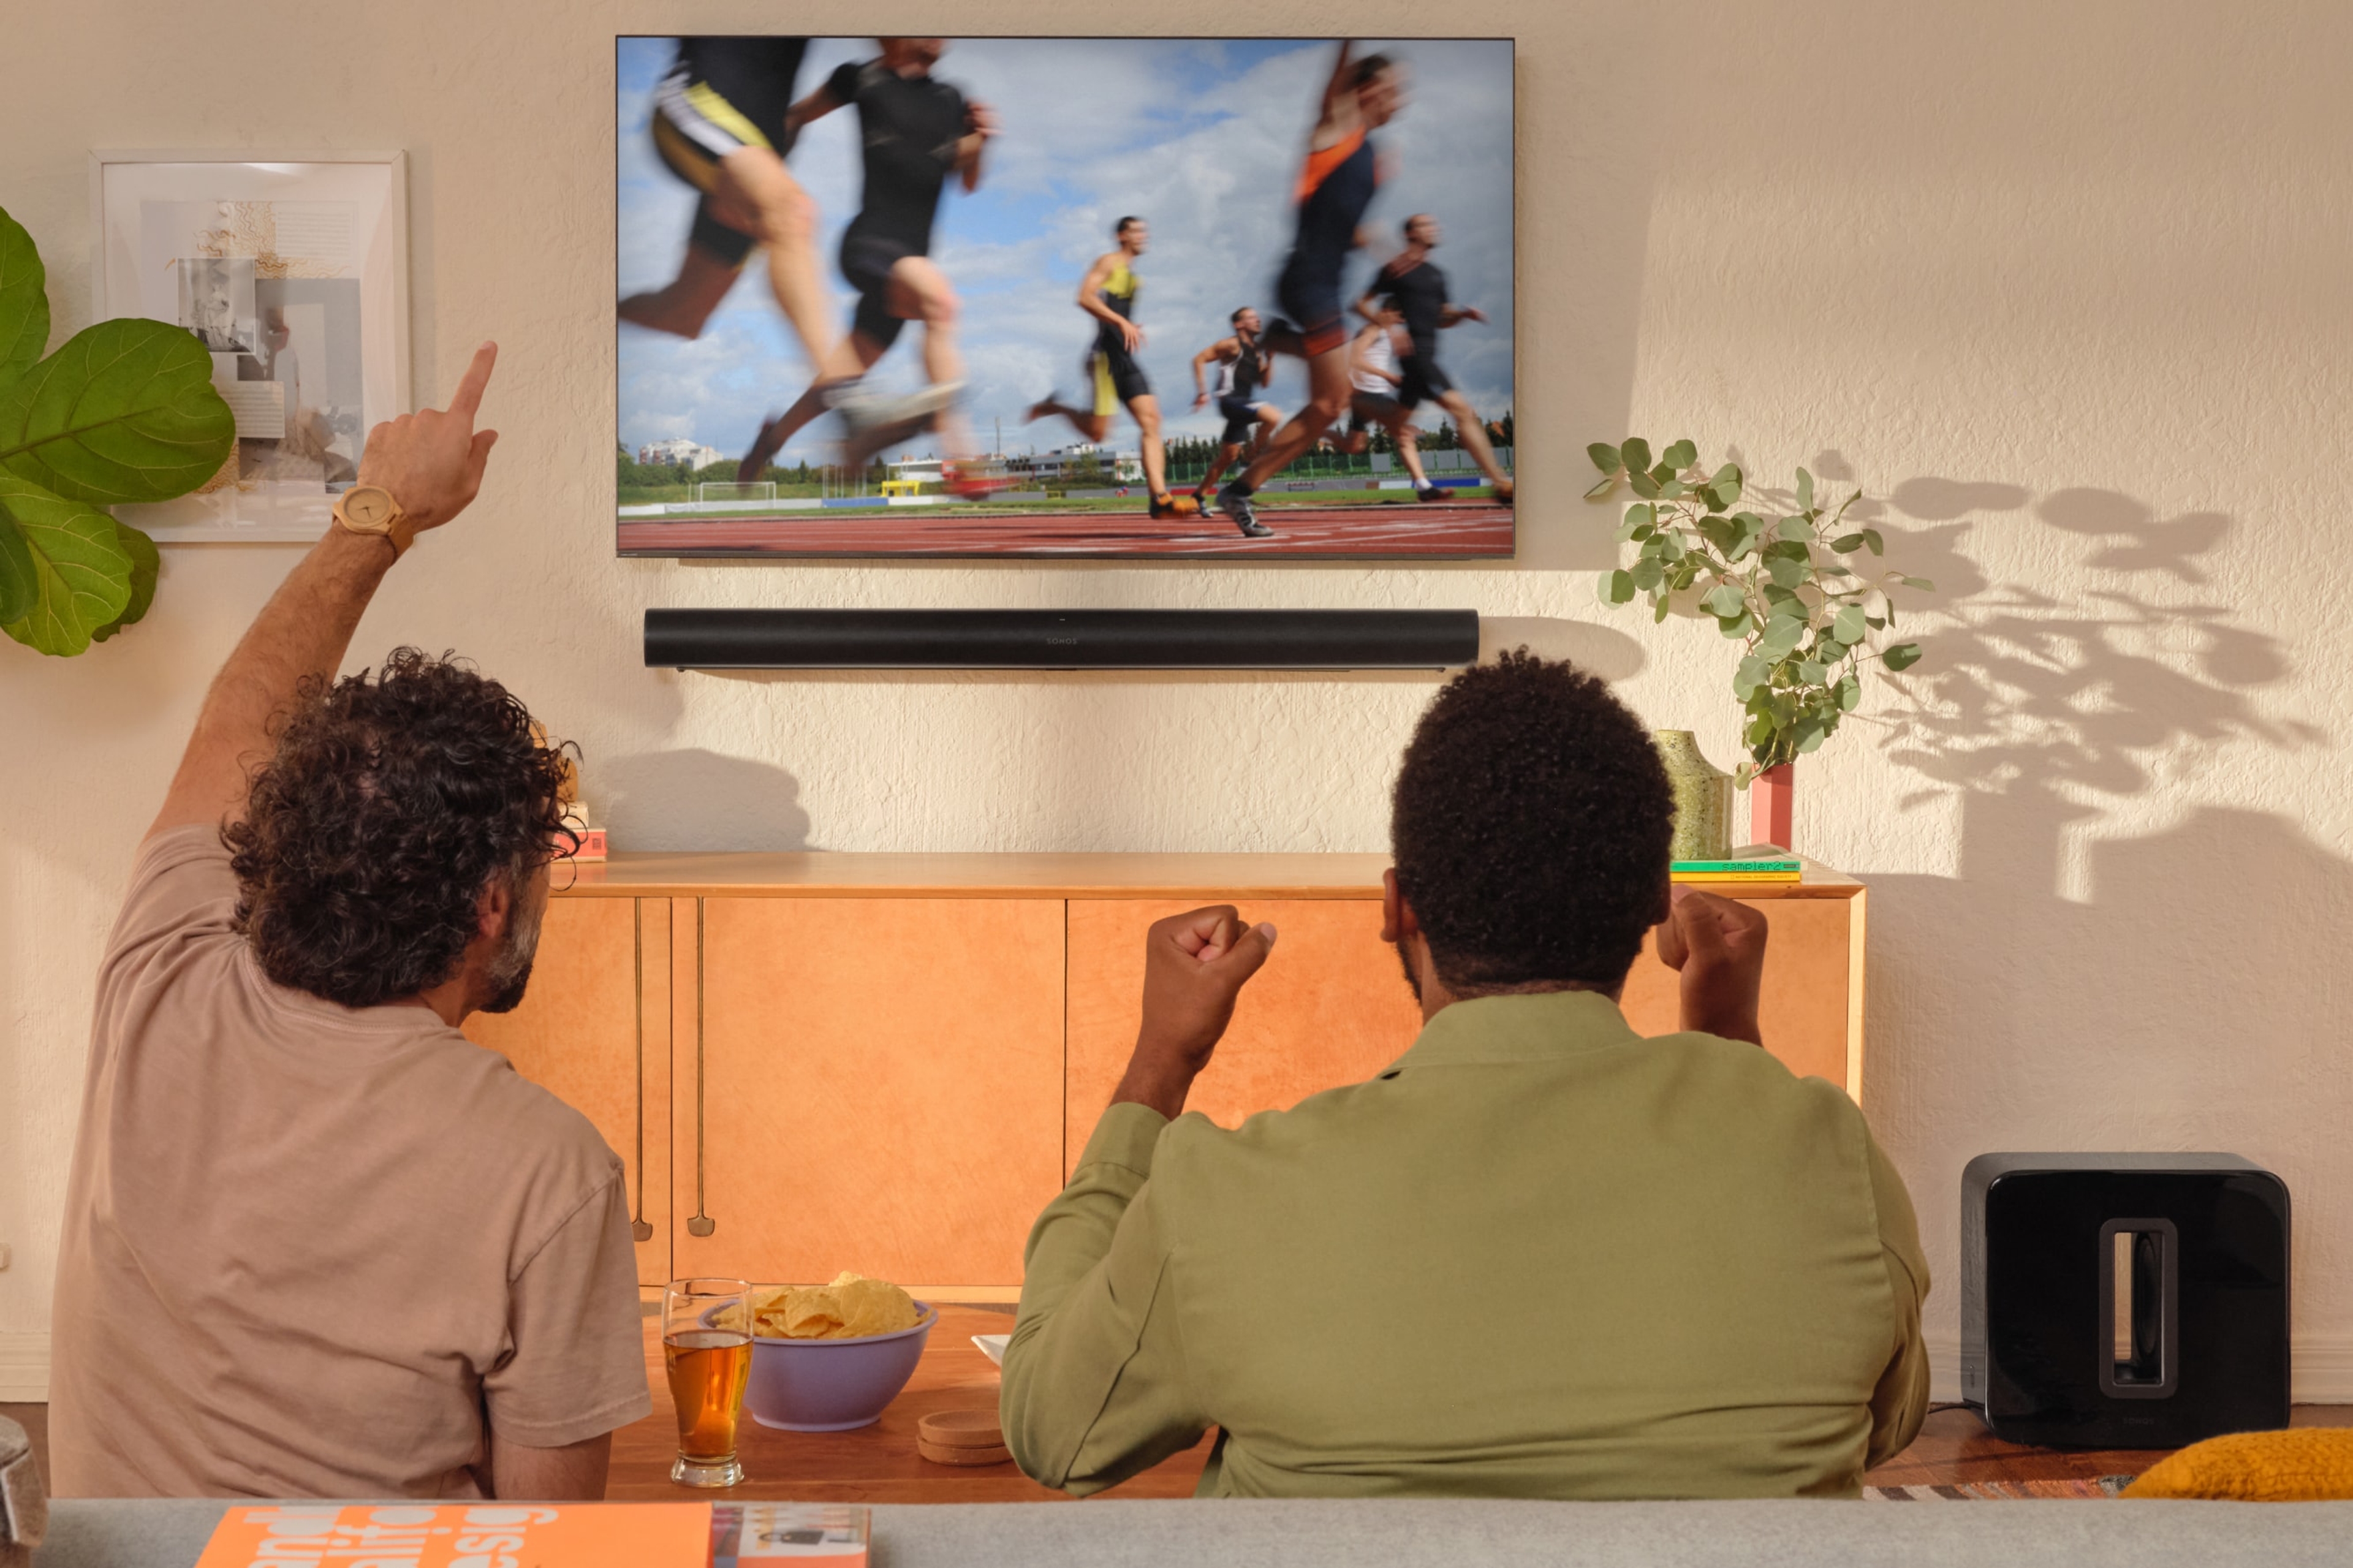 Zwei Personen, die sich auf einem Fernseher mit einer Arc in Schwarz und einem Sub Leichtathletik ansehen